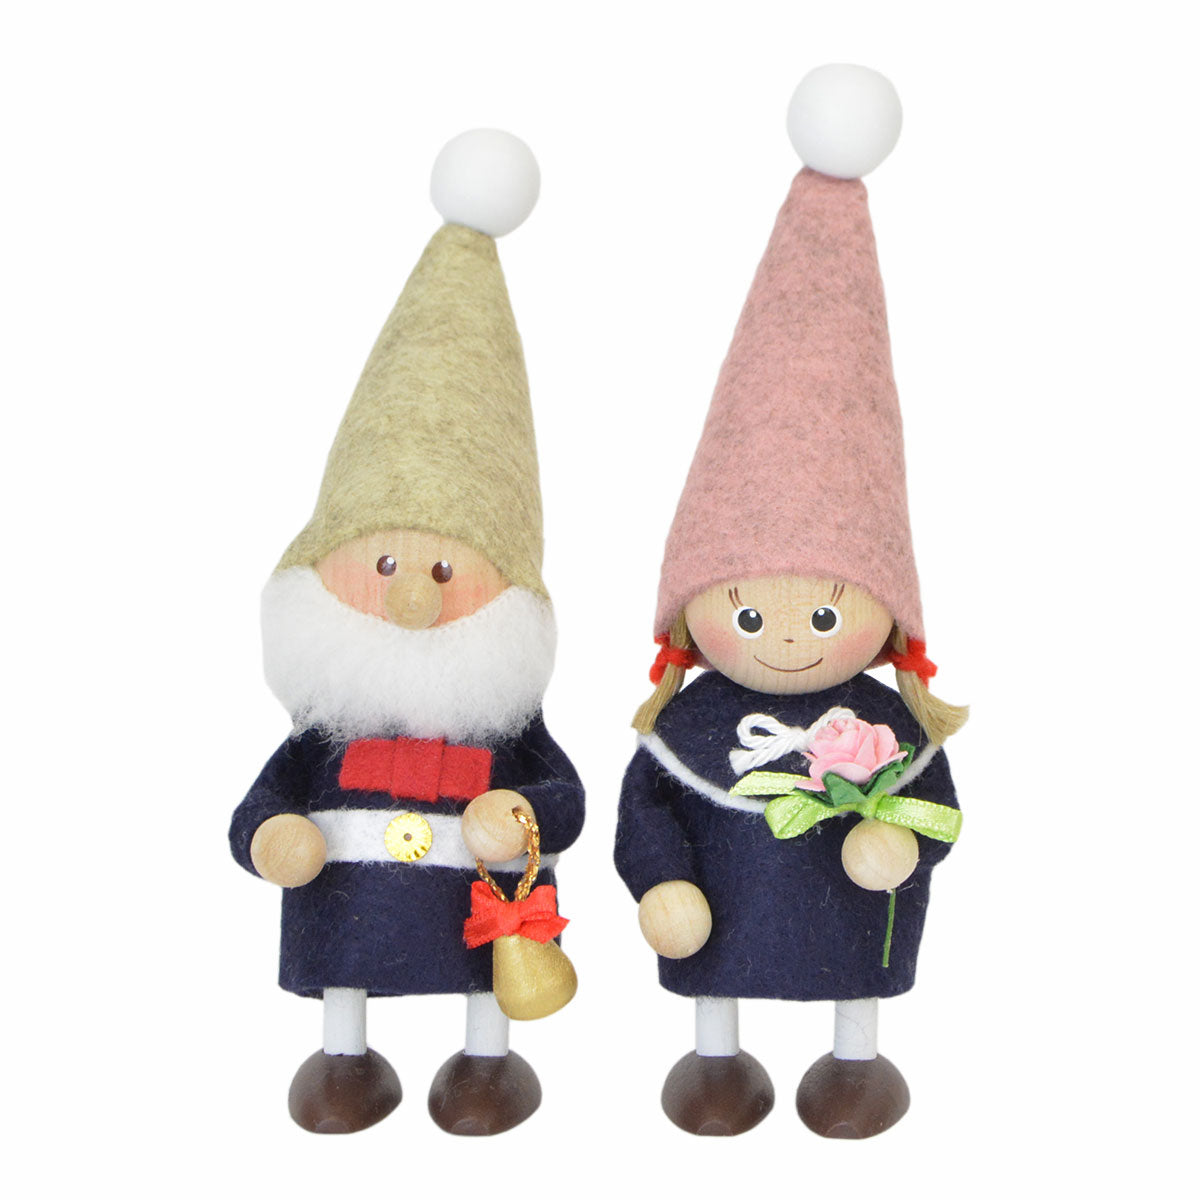 【北欧雑貨オリジナル】NORDIKA nisse ノルディカ ニッセ クリスマス 木製人形 ( 『ハーモニーニッセ』 )